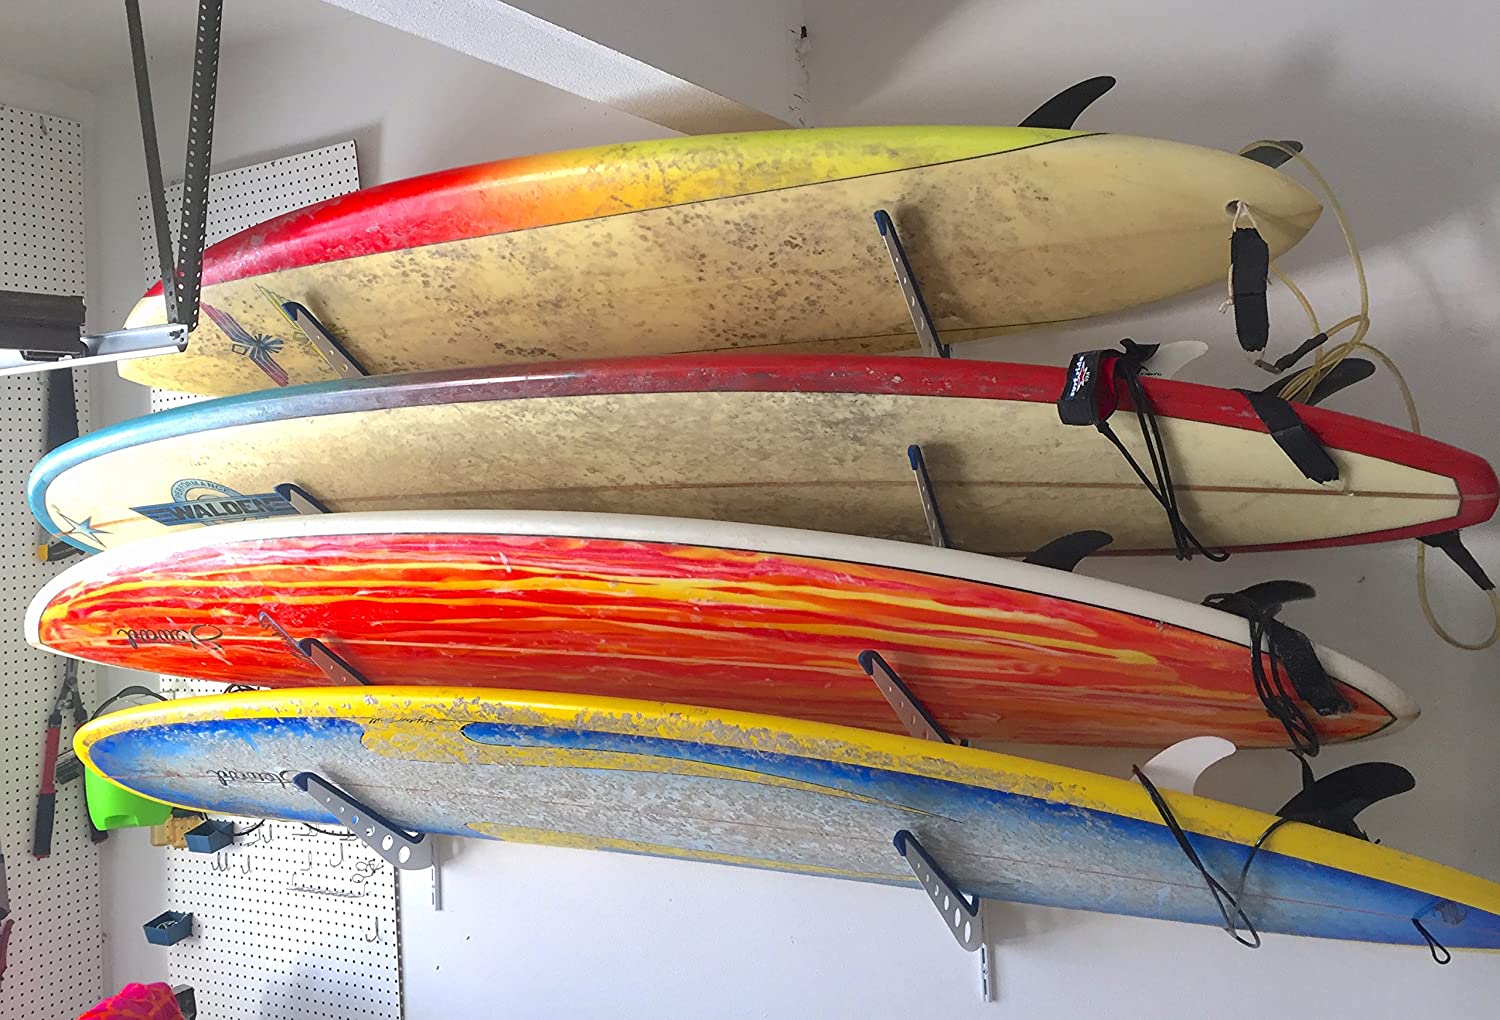 Top 10 Best Surfboard Storage Racks in 2021 Reviews | Buyer's Guide